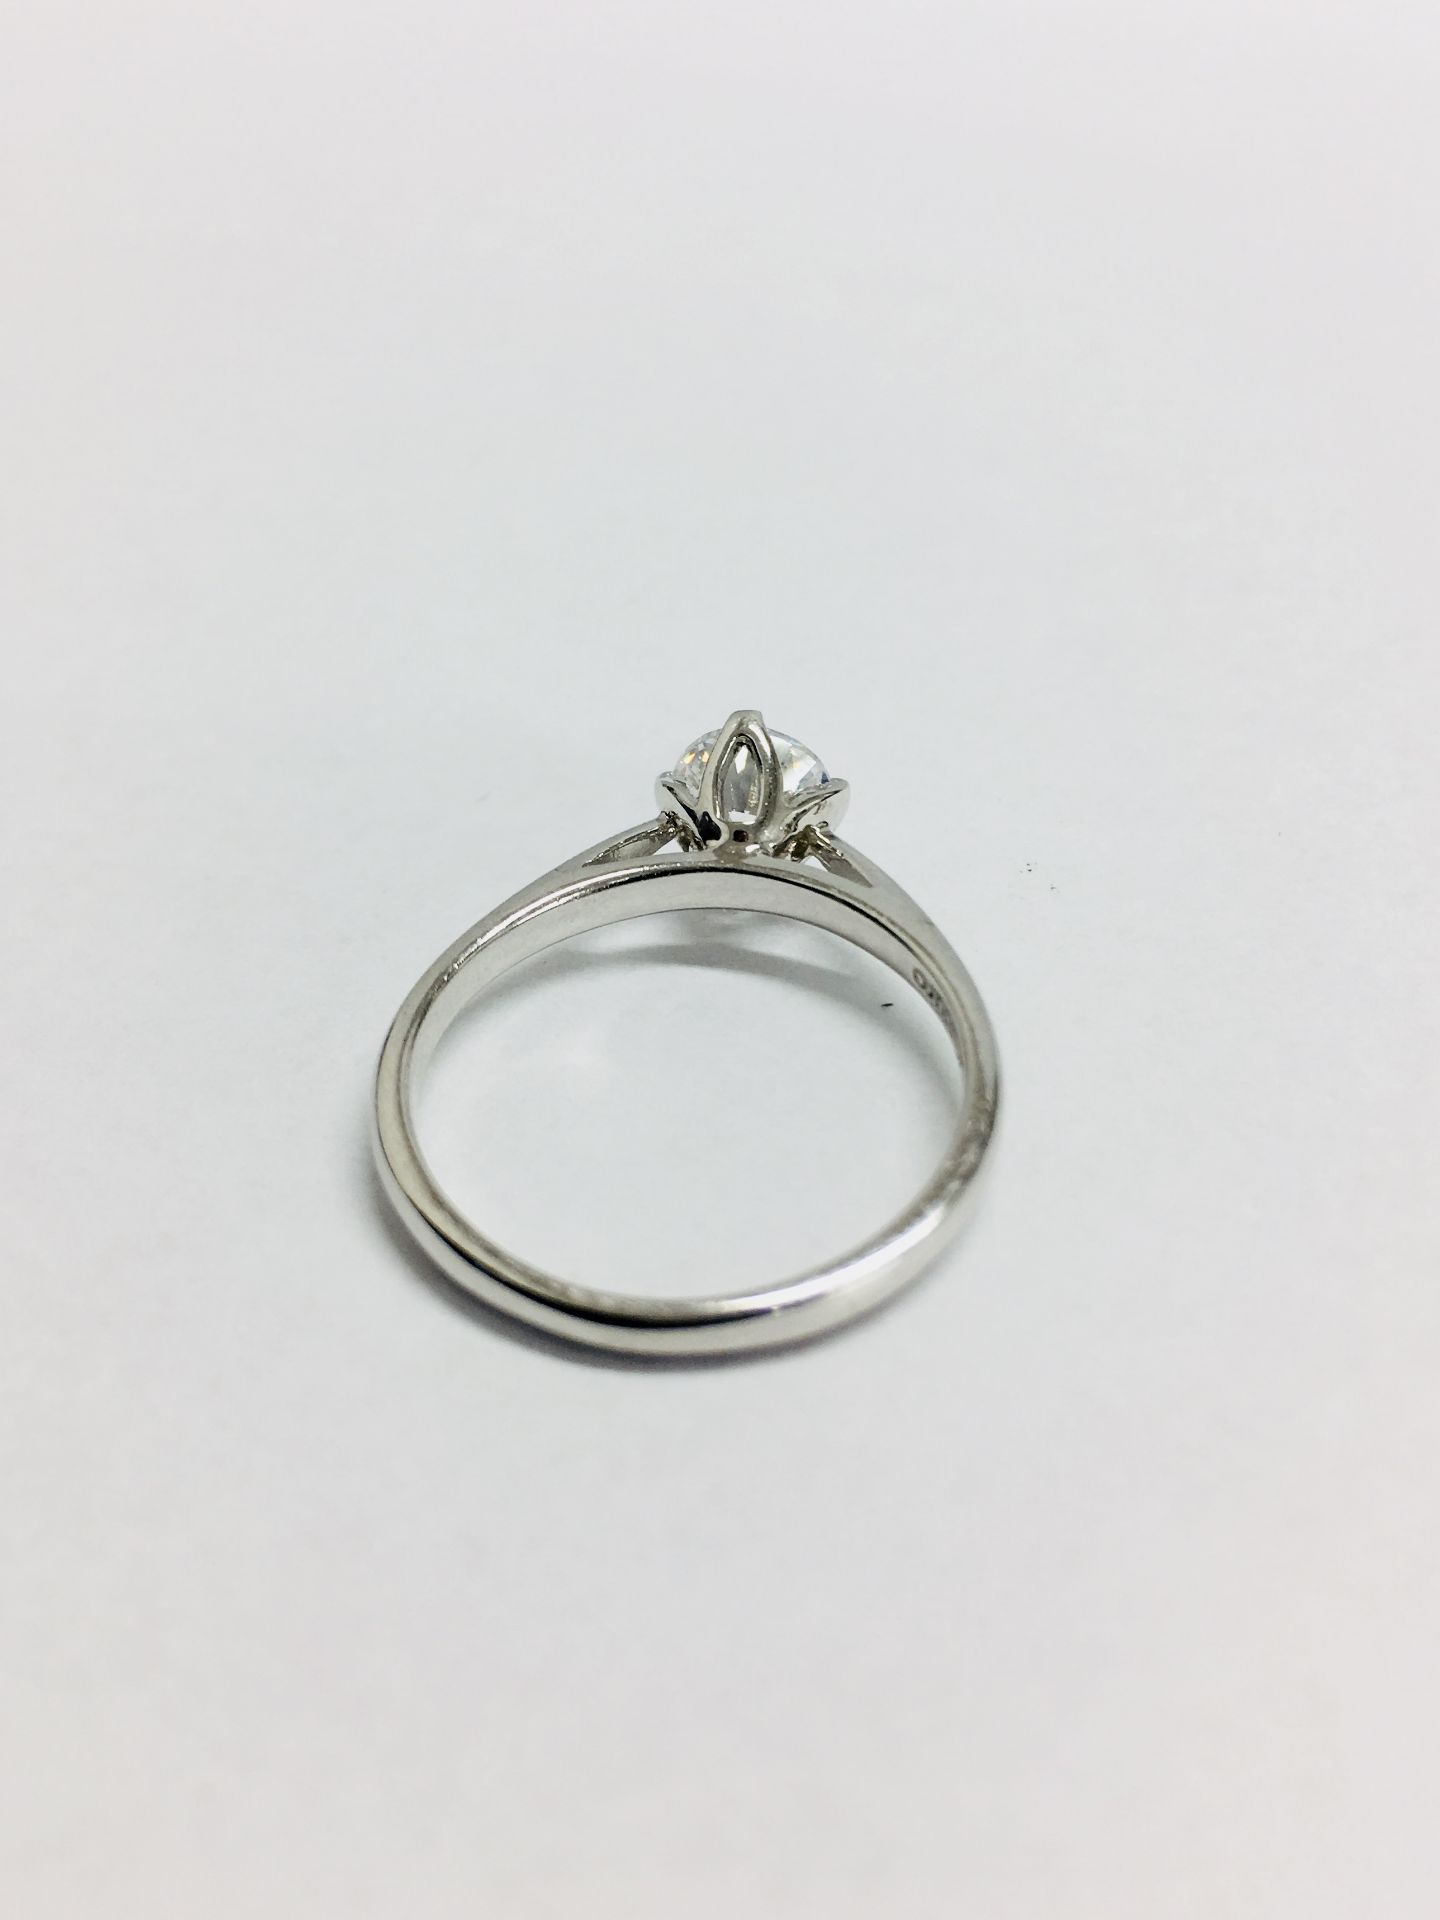 Platinum diamond solitaire ring,0.50ct brillliant cut diamond D colour vs clarity,2.9gms platinum , - Image 2 of 7